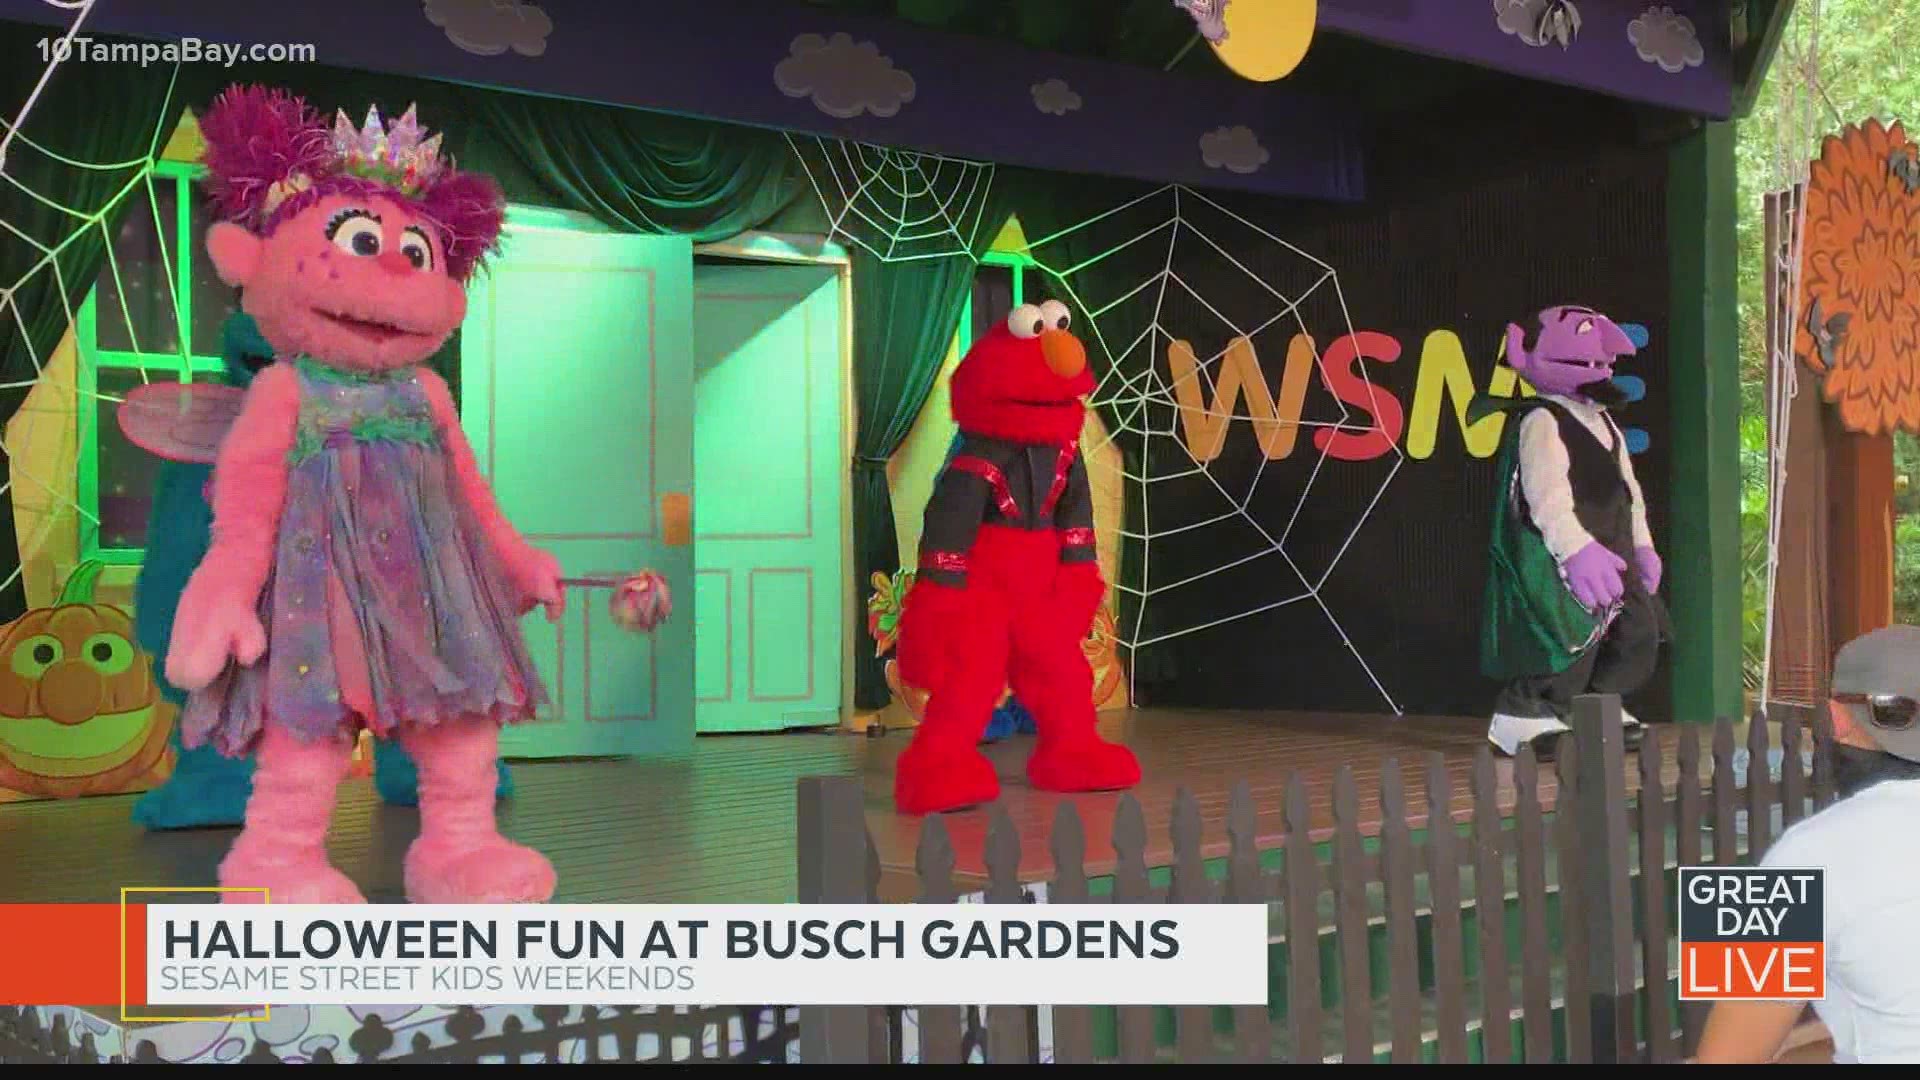 Not-so-spooky Halloween fun at Busch Gardens' Sesame Street Kids Weekends